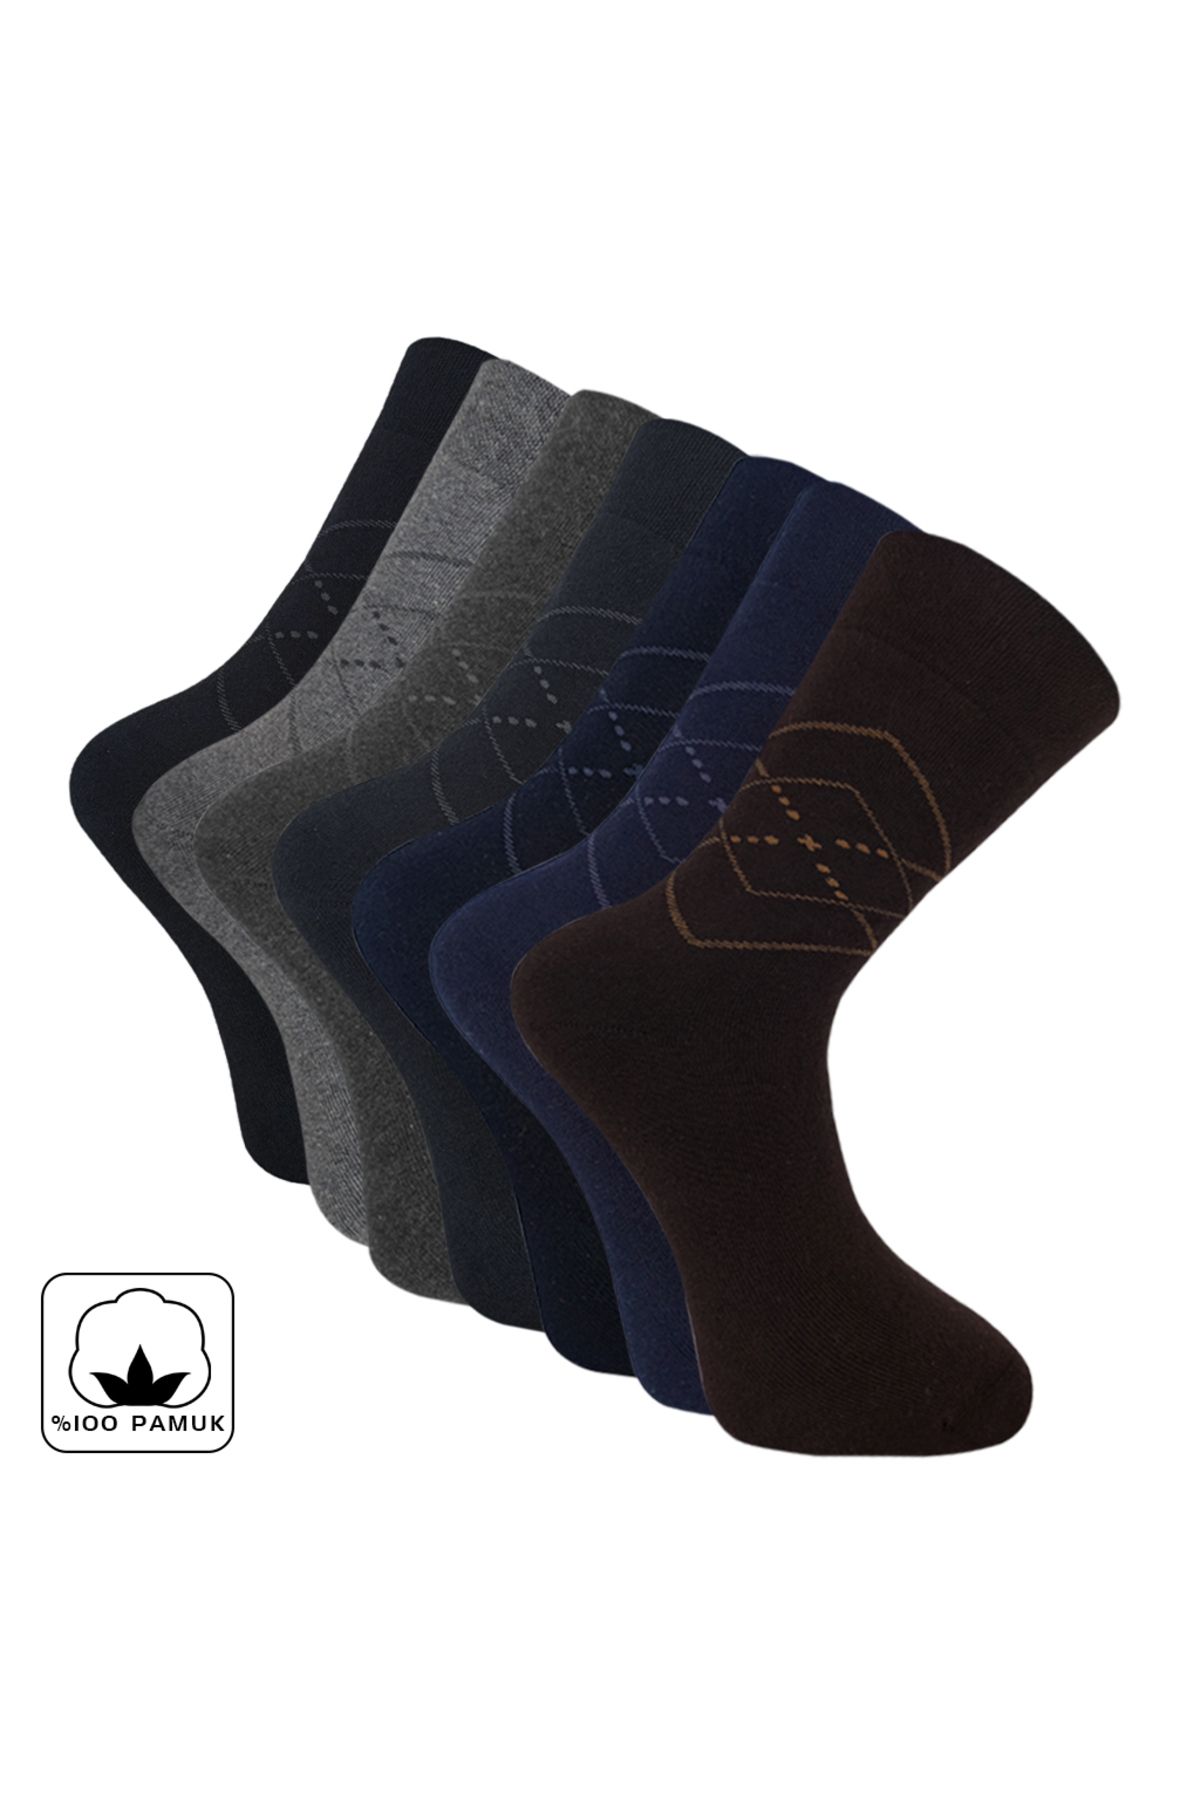 topuzoutdoor Outdoor Pro Çorap Bogaziçi Kışlık Havlu Pamuk Erkek Çorabı 41-44 (14601)